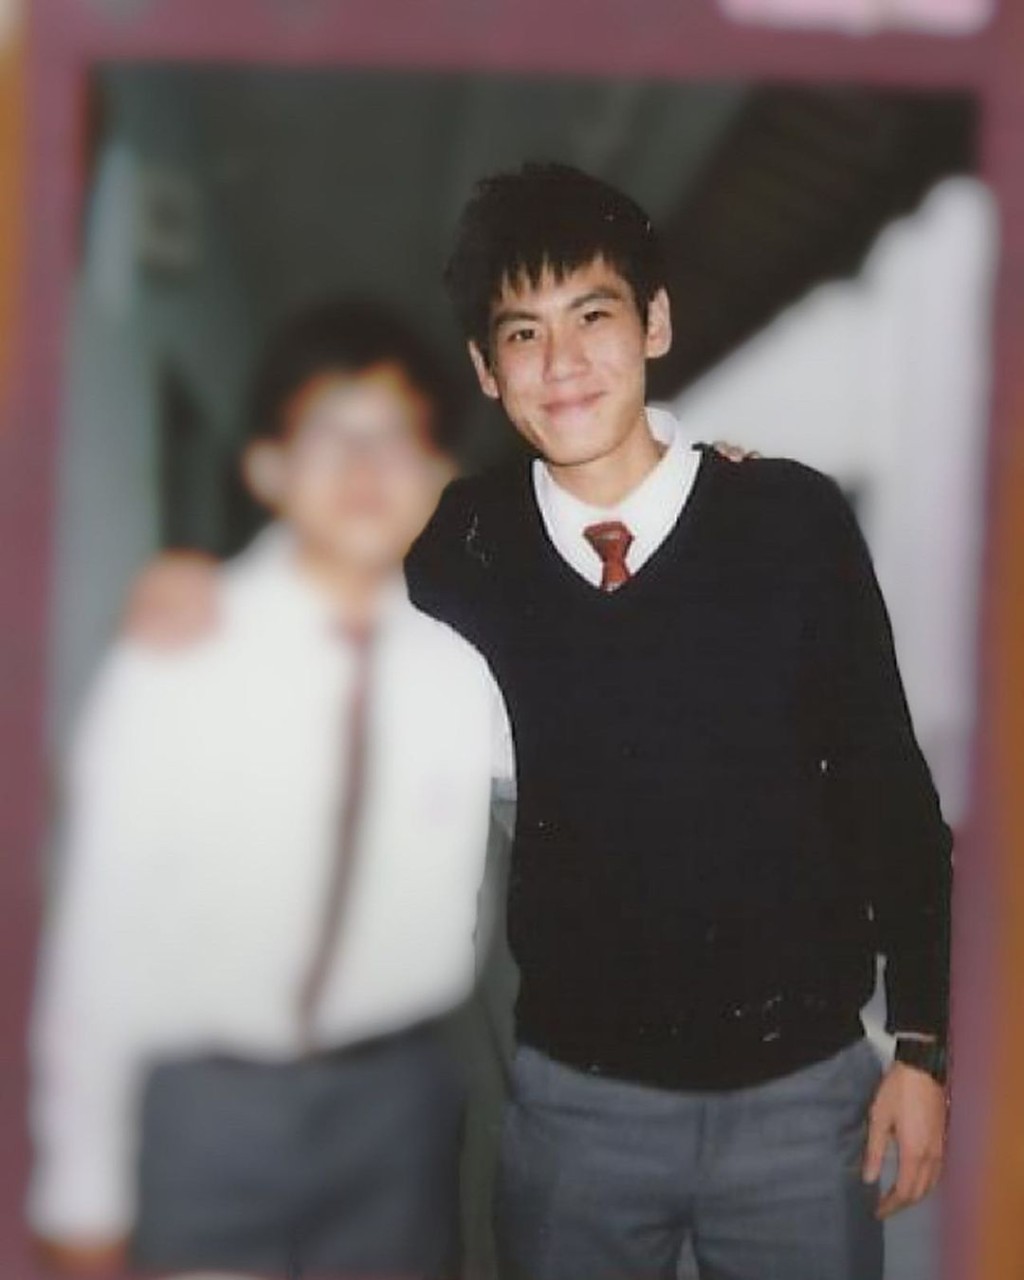 徐文浩中学时已非常帅气。